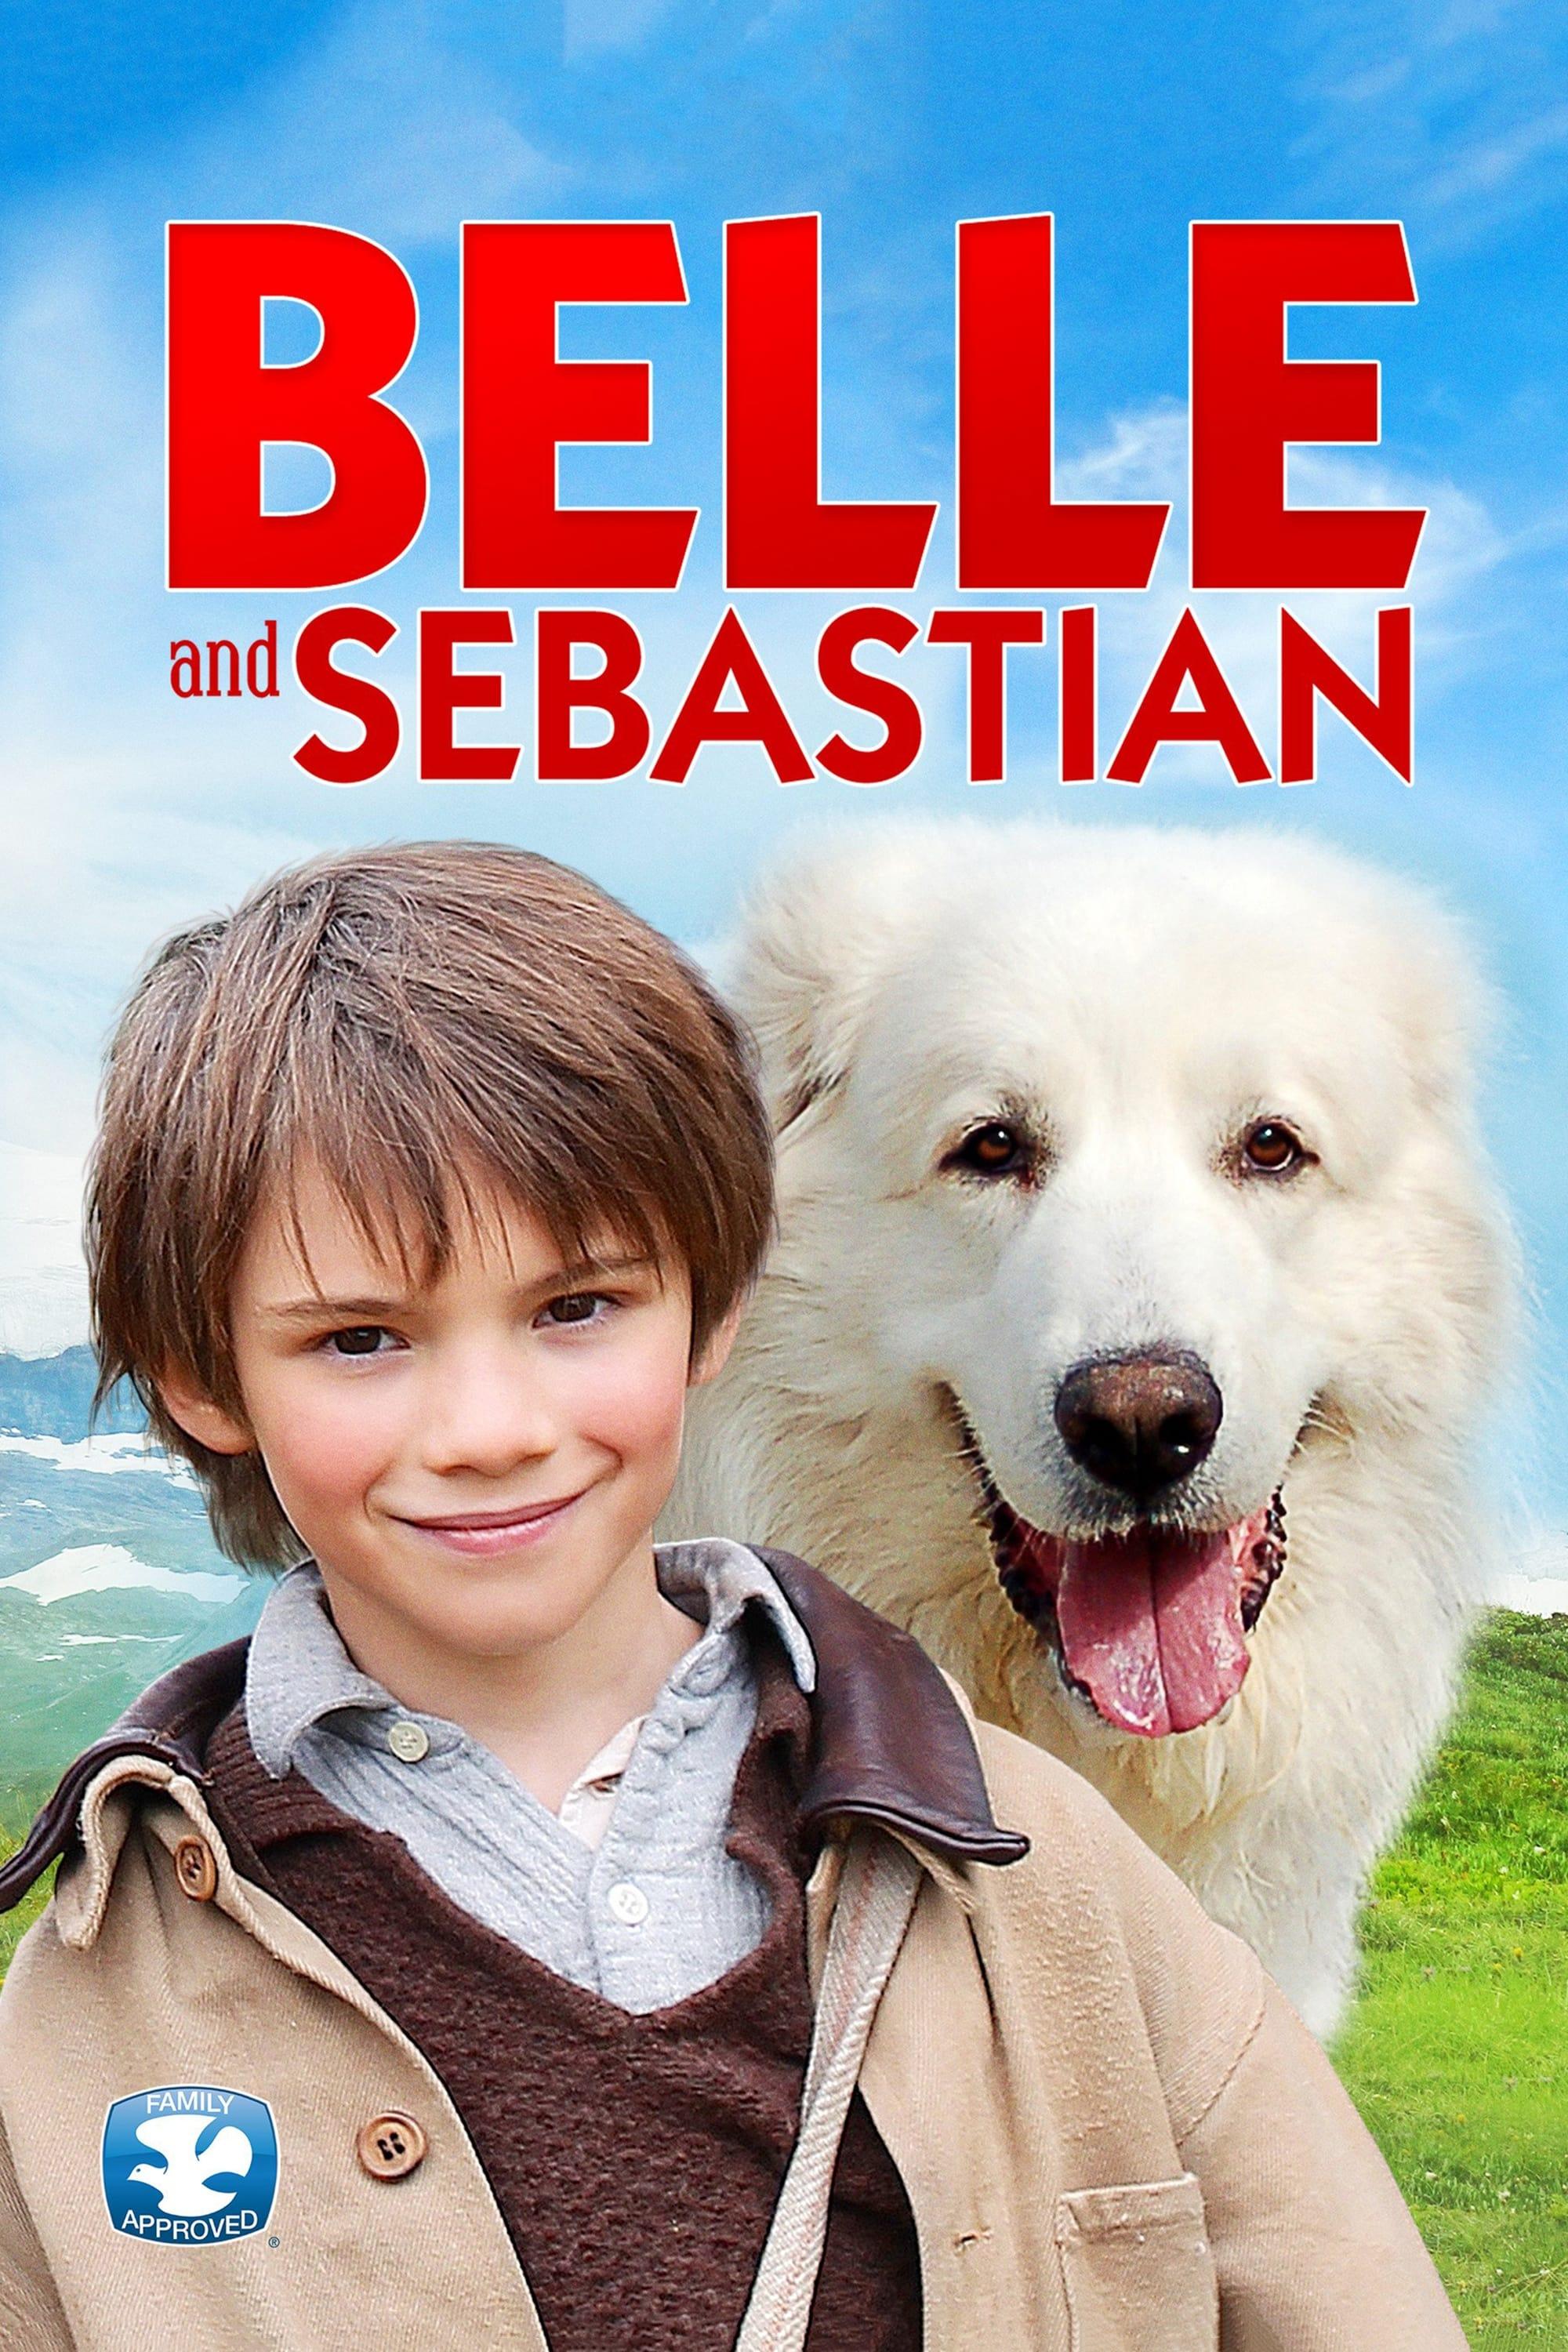 Belle and Sebastian poster